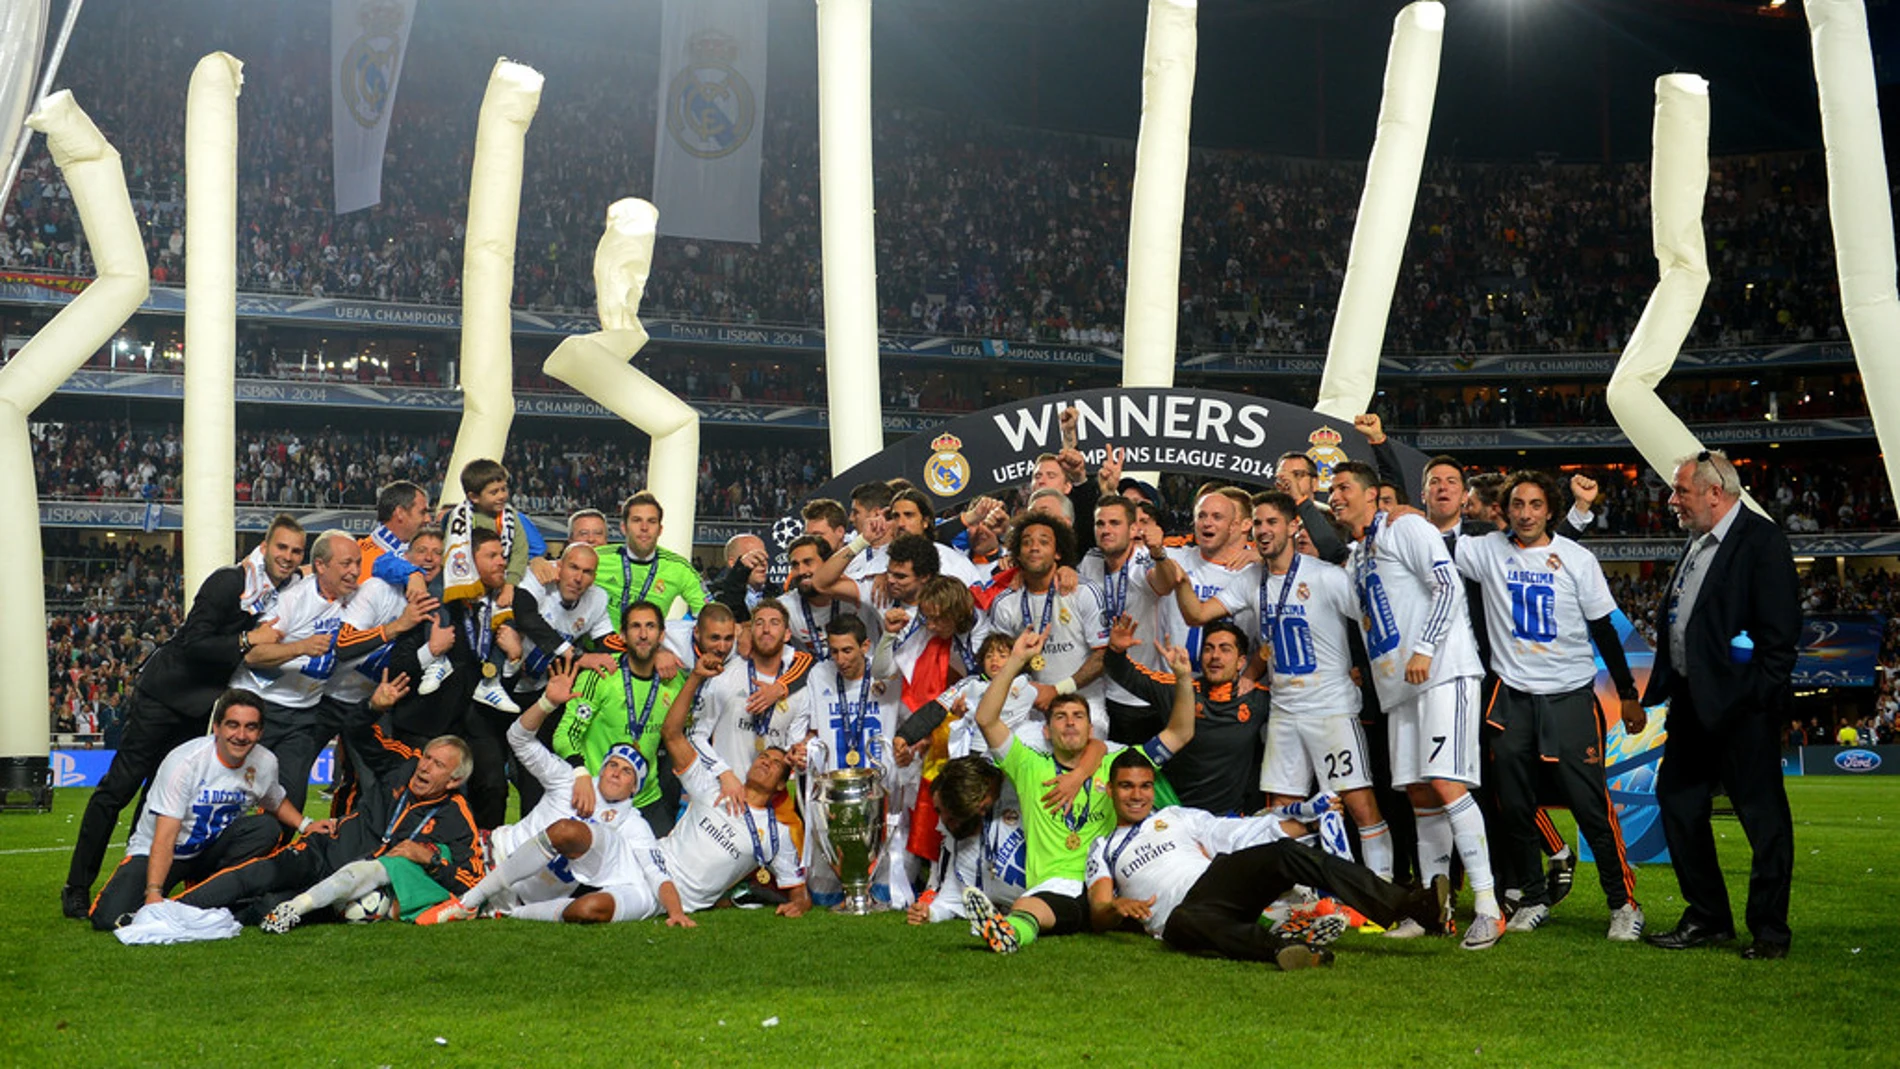 La Liga de Campeones generó 1.445 millones en la temporada 2013/14